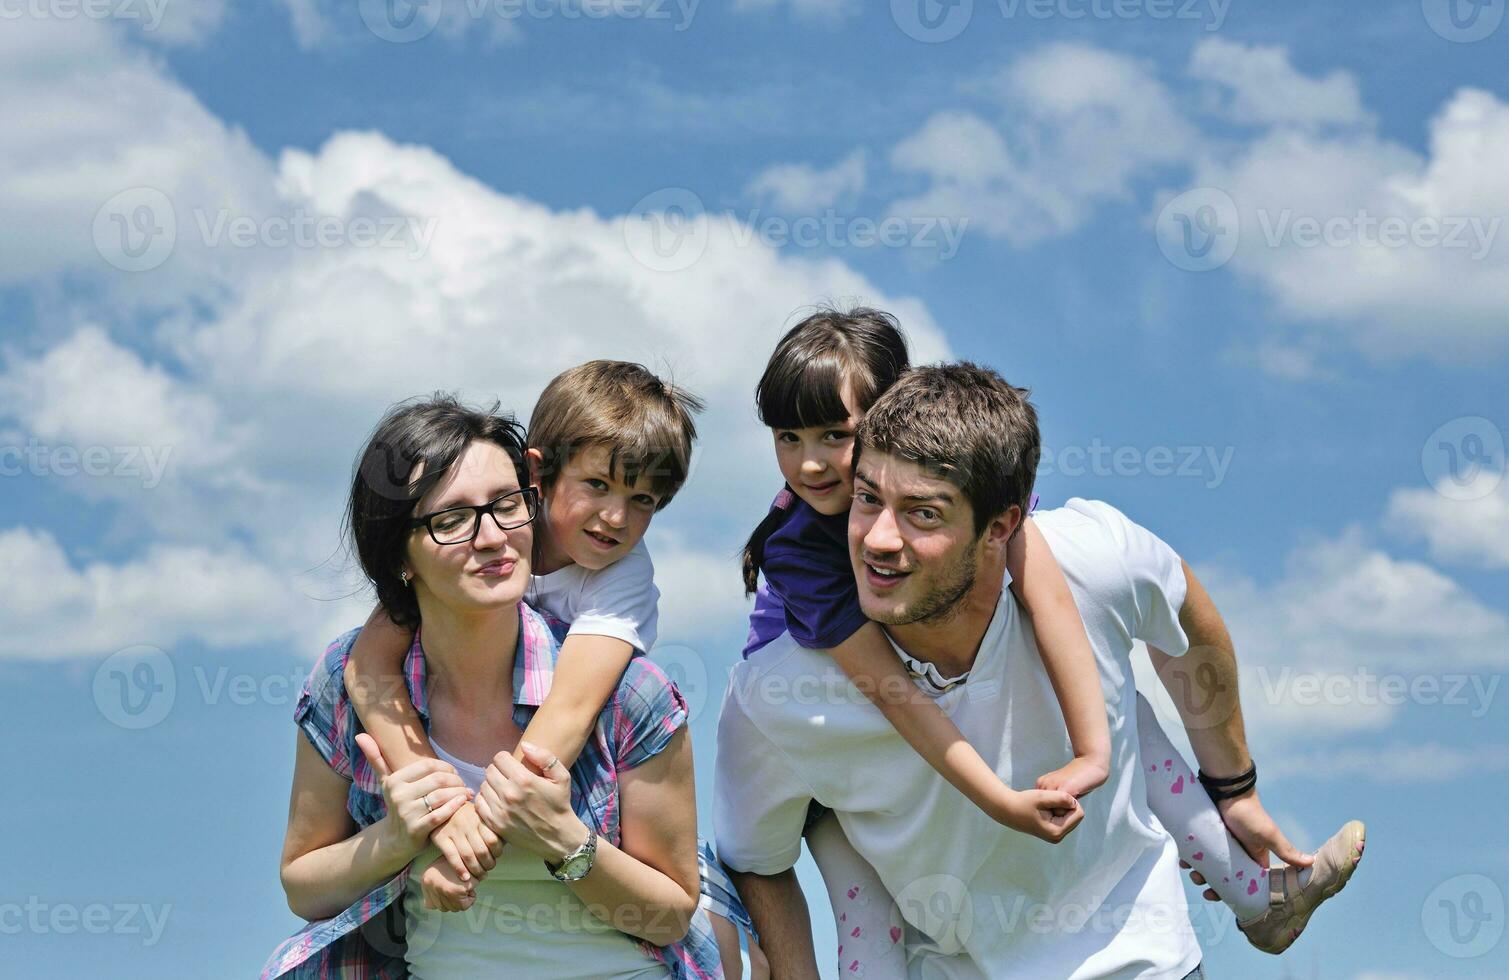 feliz jovem família se divertir ao ar livre foto